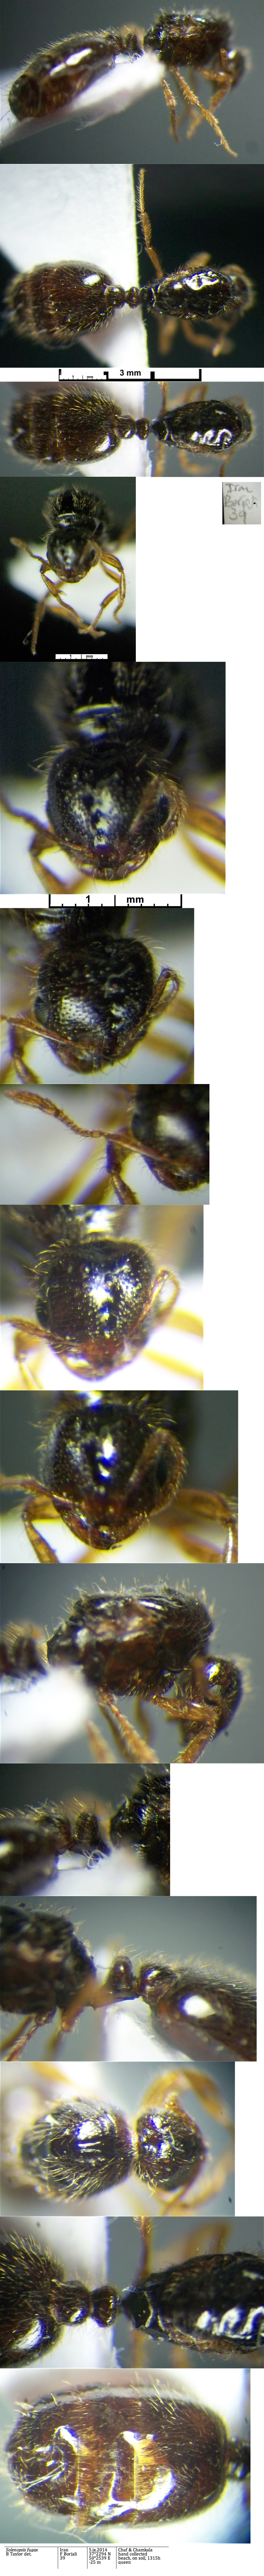 Solenopsis fugax dealate queen